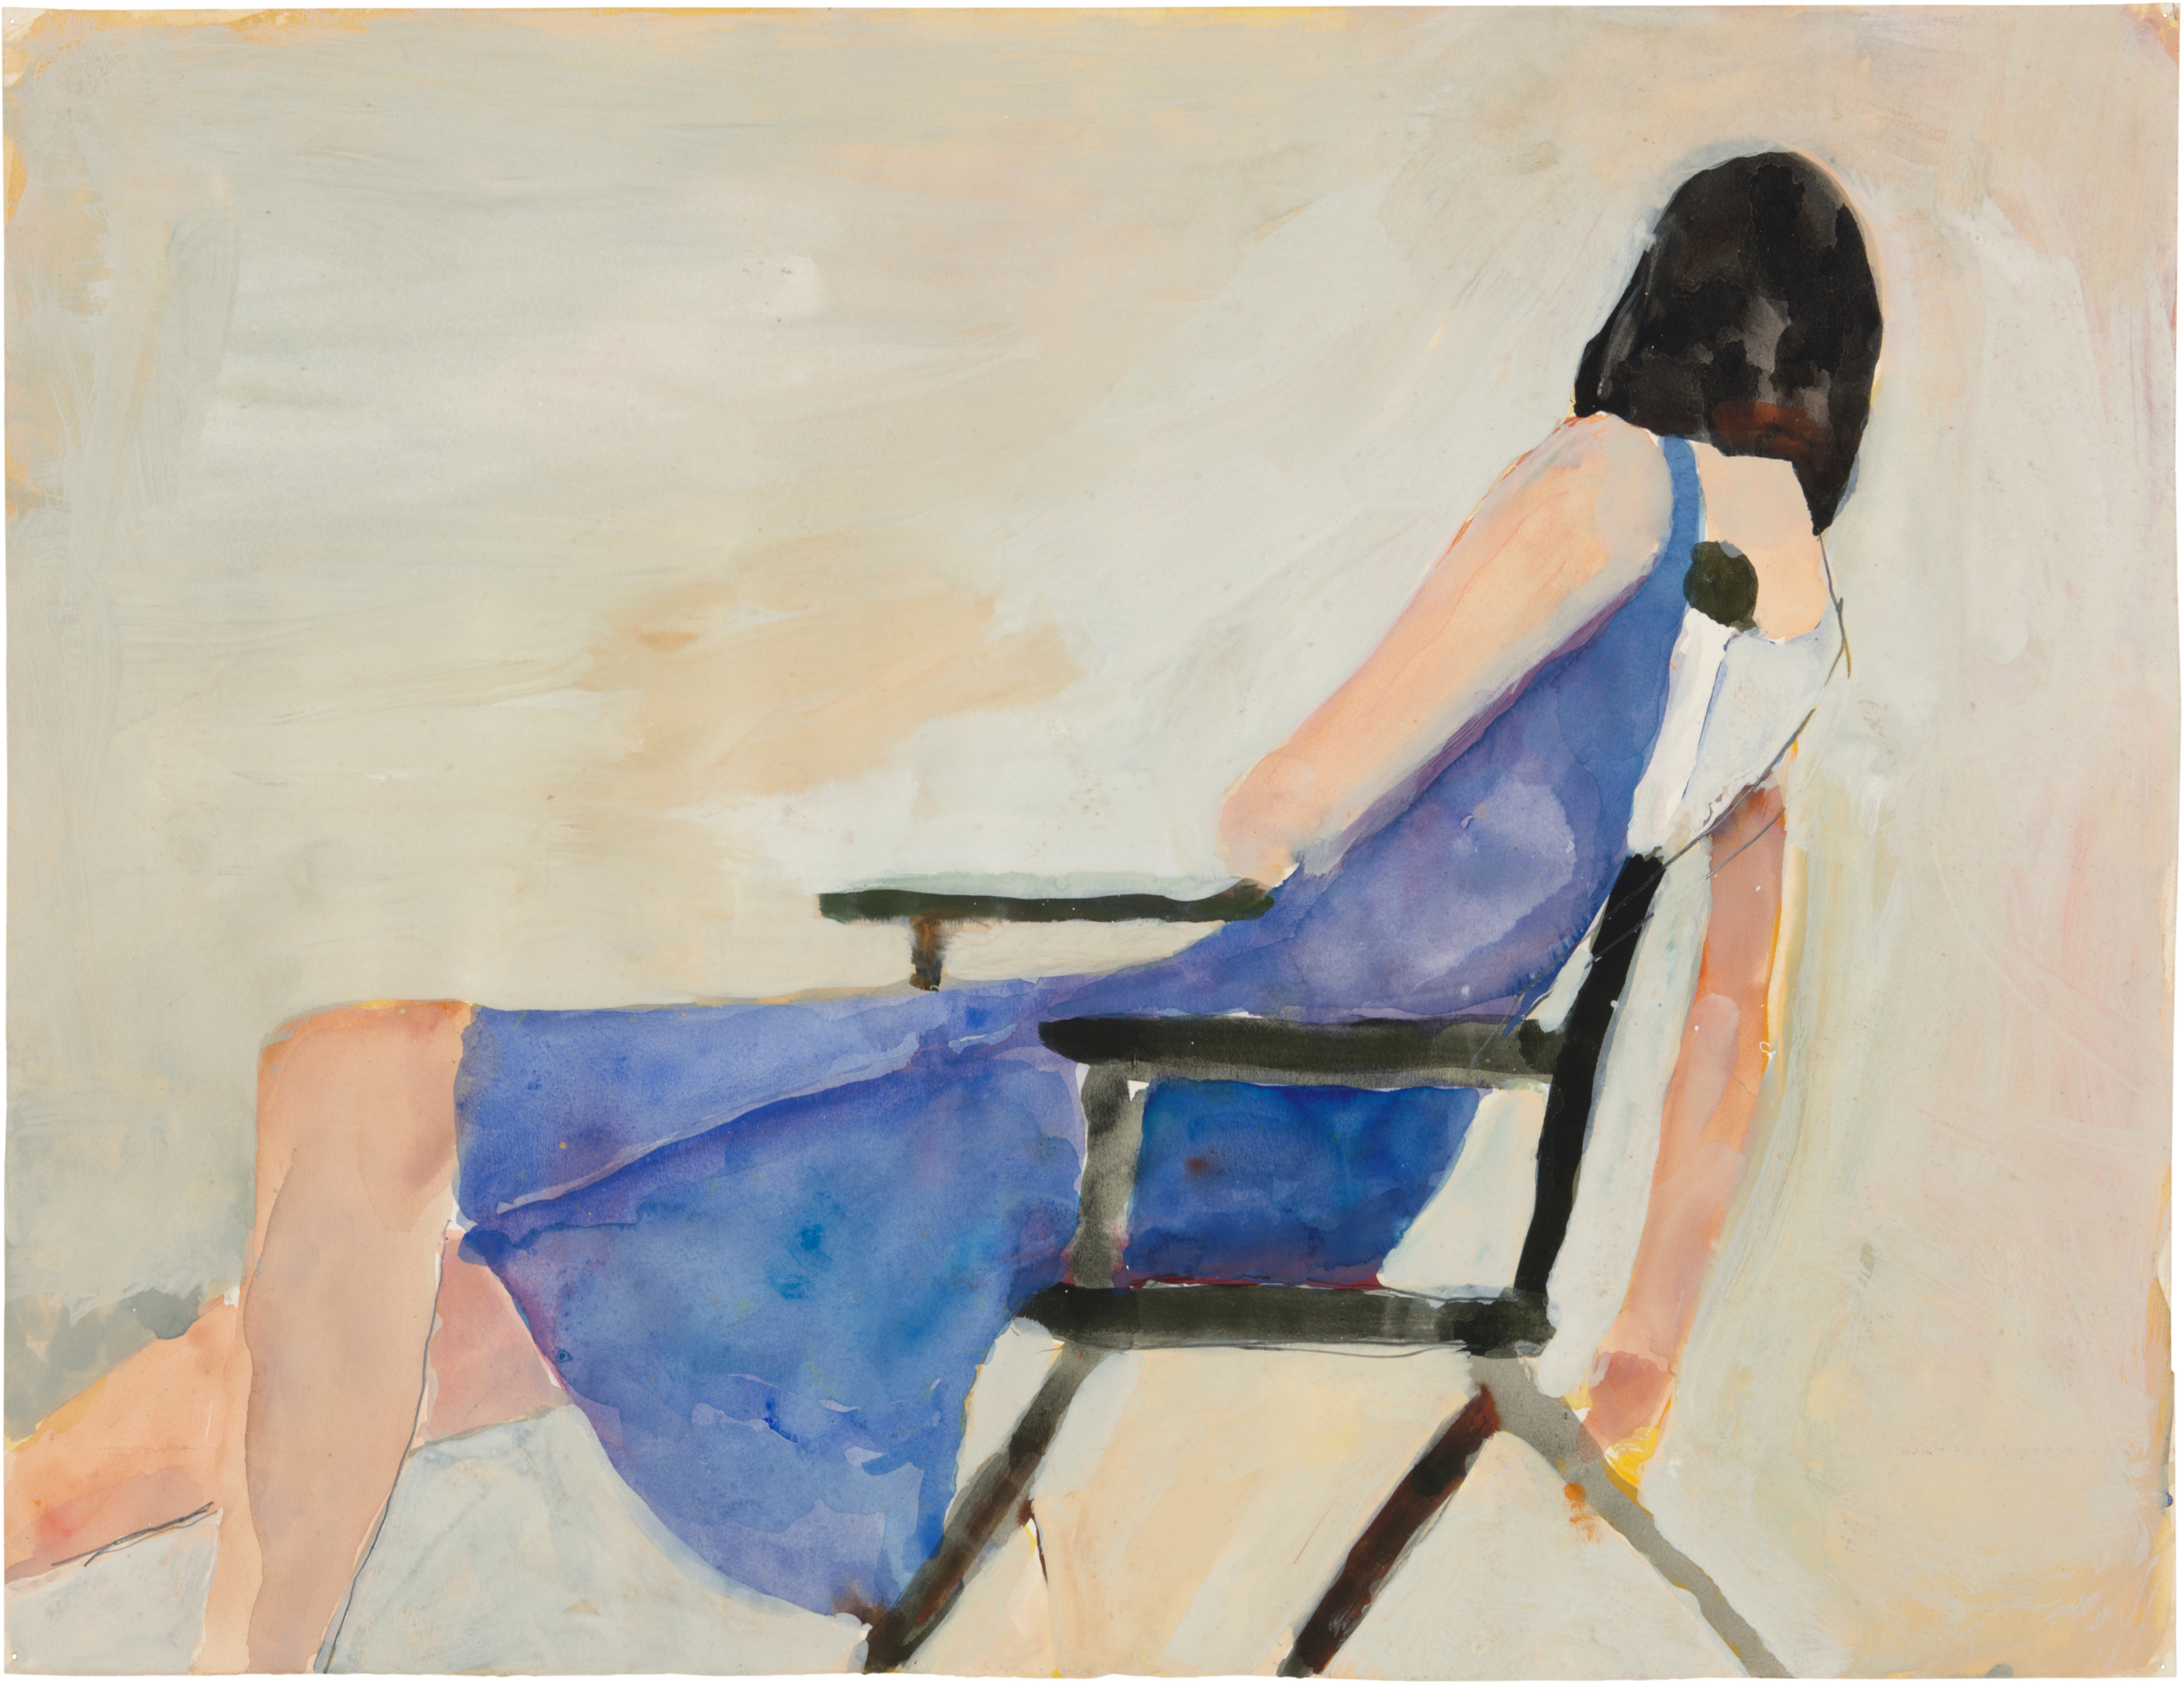 Richard Diebenkorn: Paintings and Works on Paper, 1948-1992 -  - Viewing Room - Berggruen Gallery Viewing Room